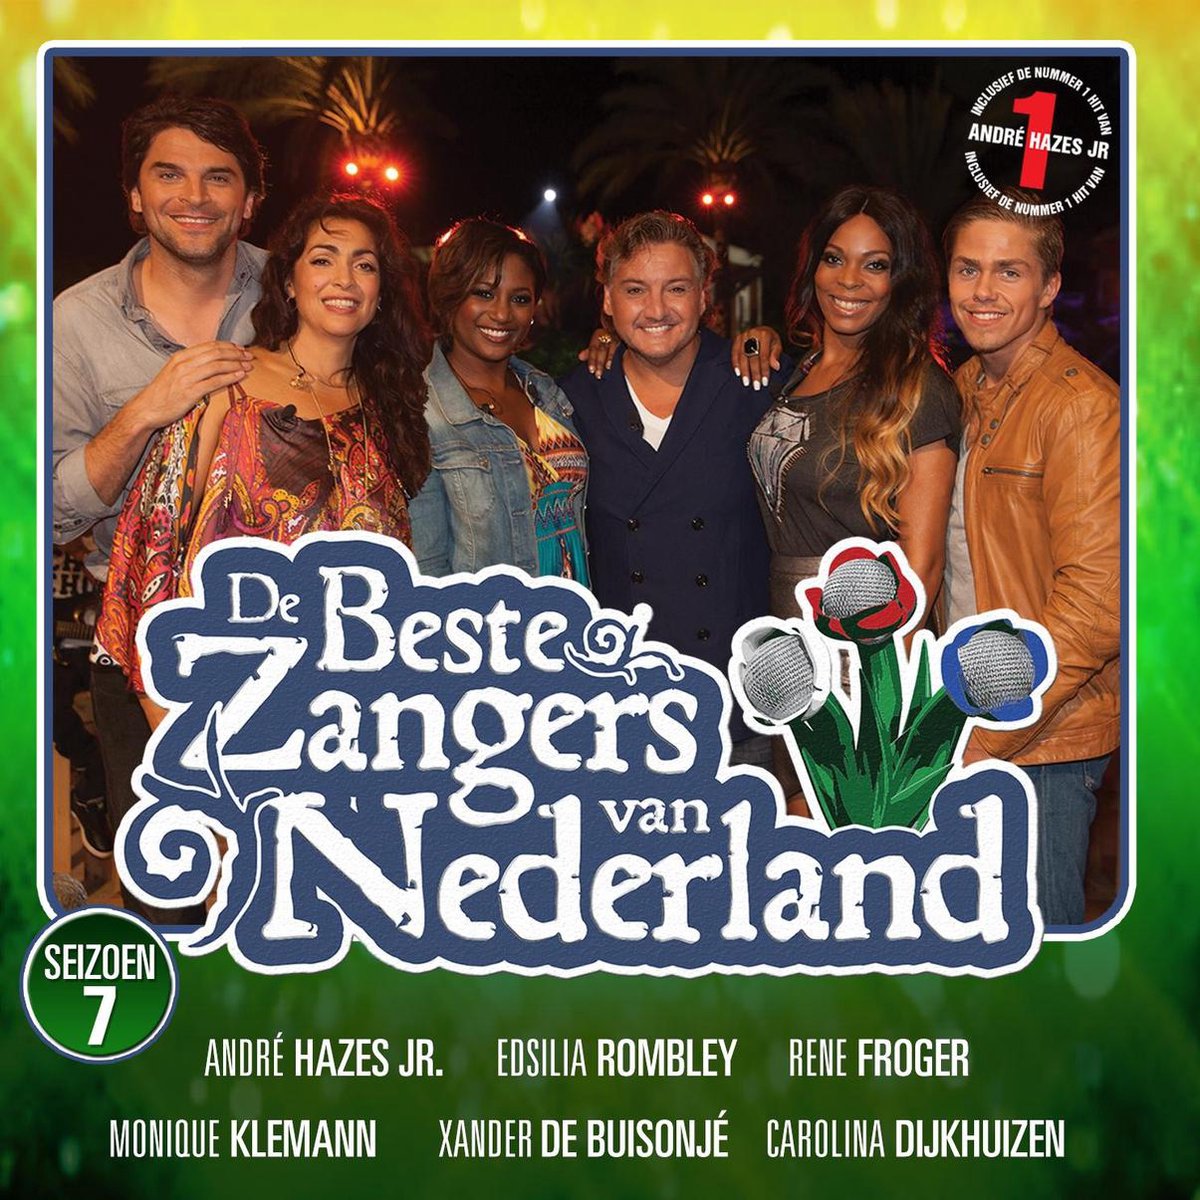 De Beste Zangers van Nederland - Seizoen 7, De Beste Zangers | CD (album) |  Muziek | bol.com